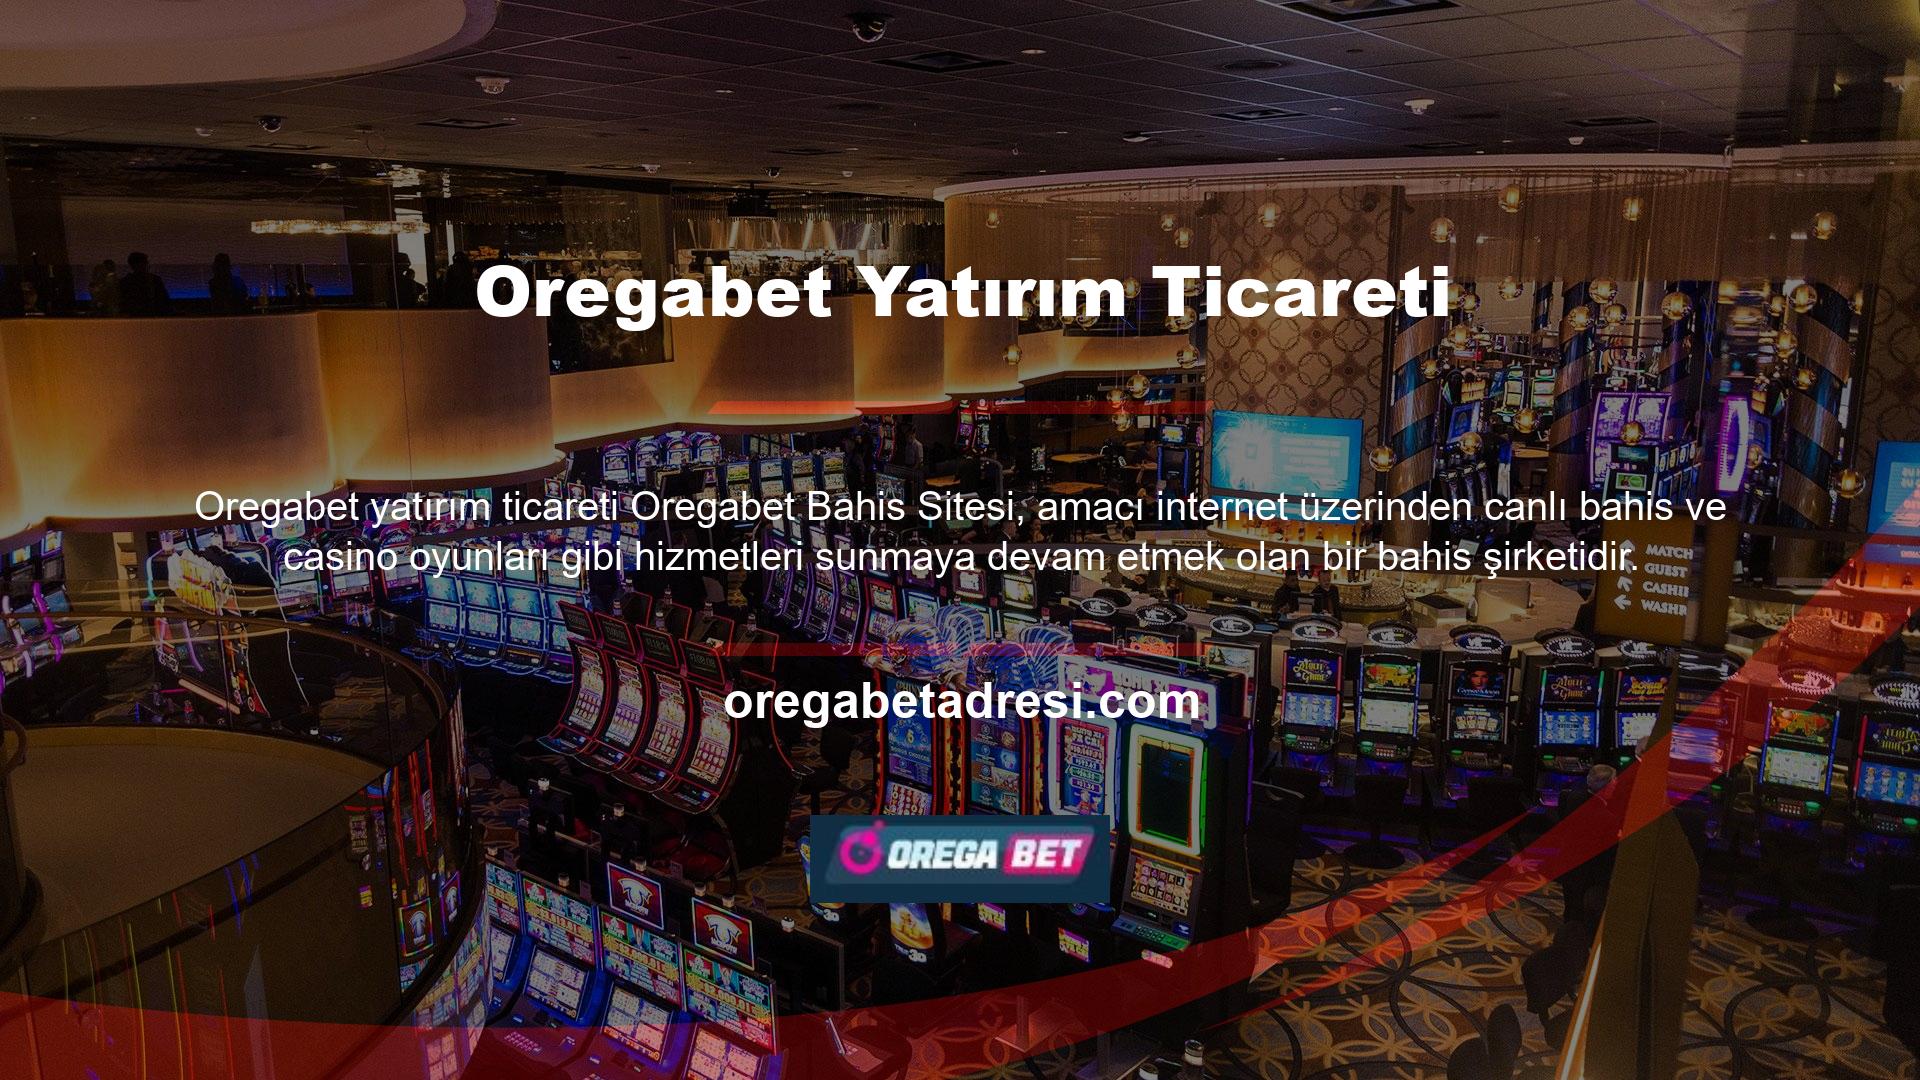 Oregabet, casino sektörünün en iyi bahis sitesi olarak kabul edilir ve güvenilir ve profesyonel bir hizmet sunar